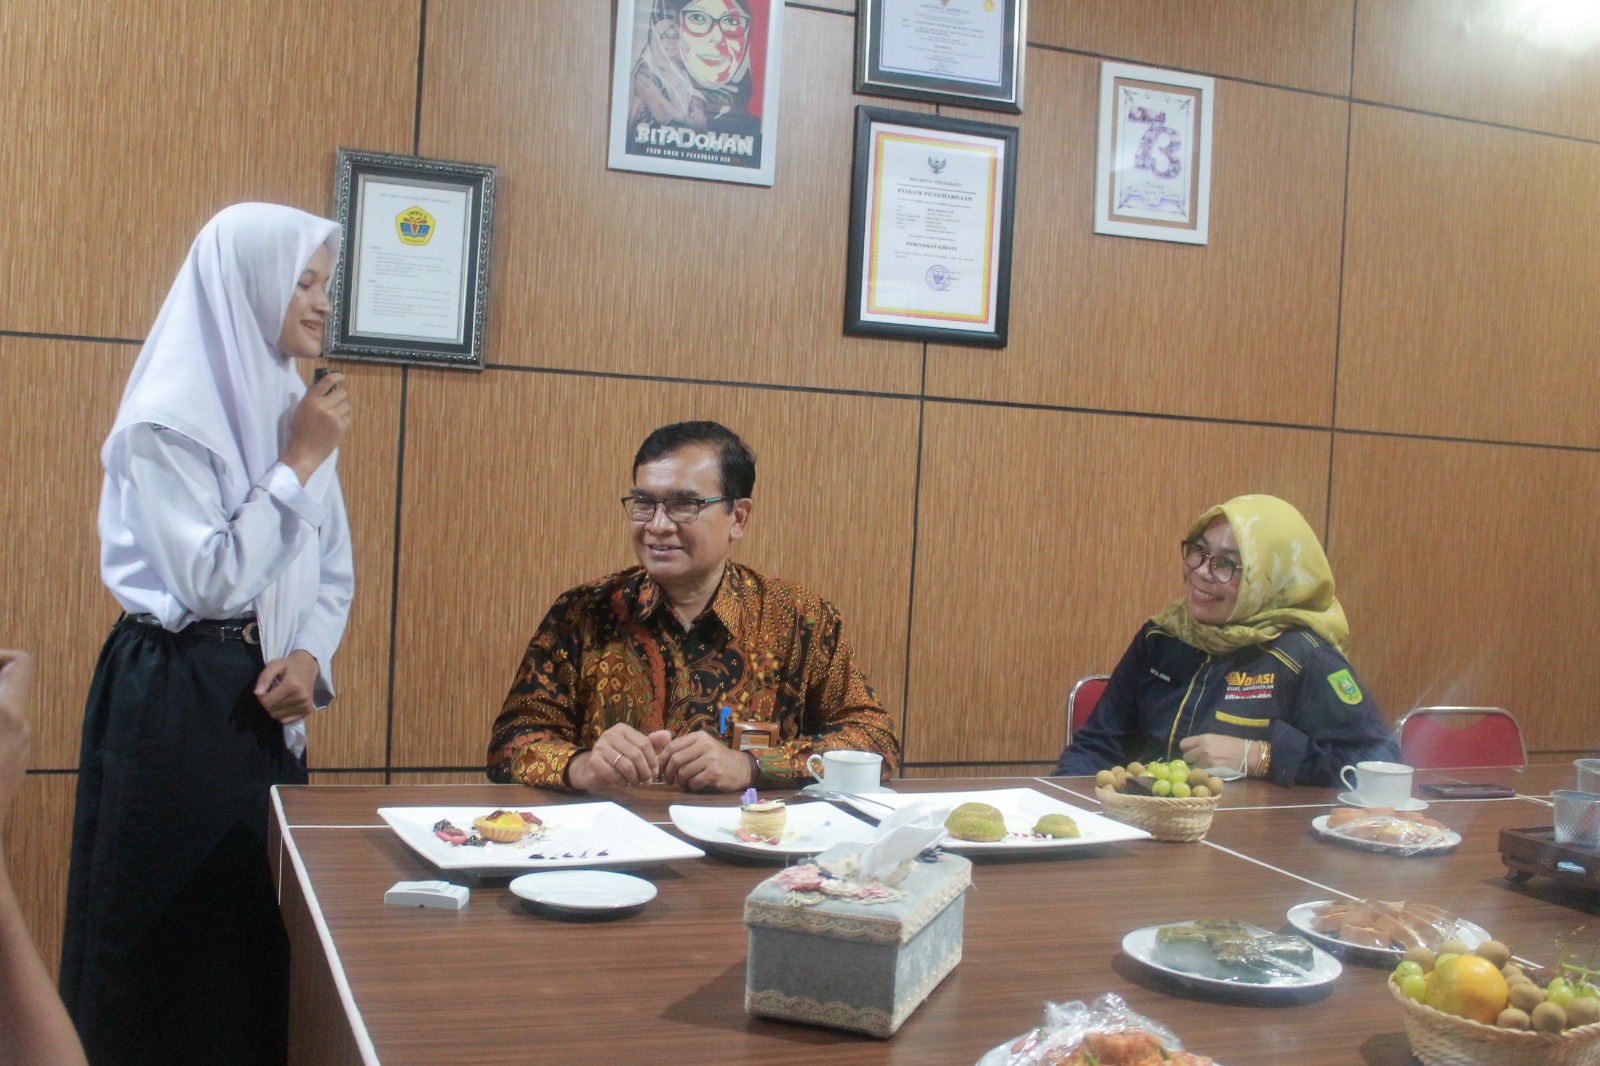 Kunjungan Direktur SMK di SMK Negeri 3 Pekanbaru